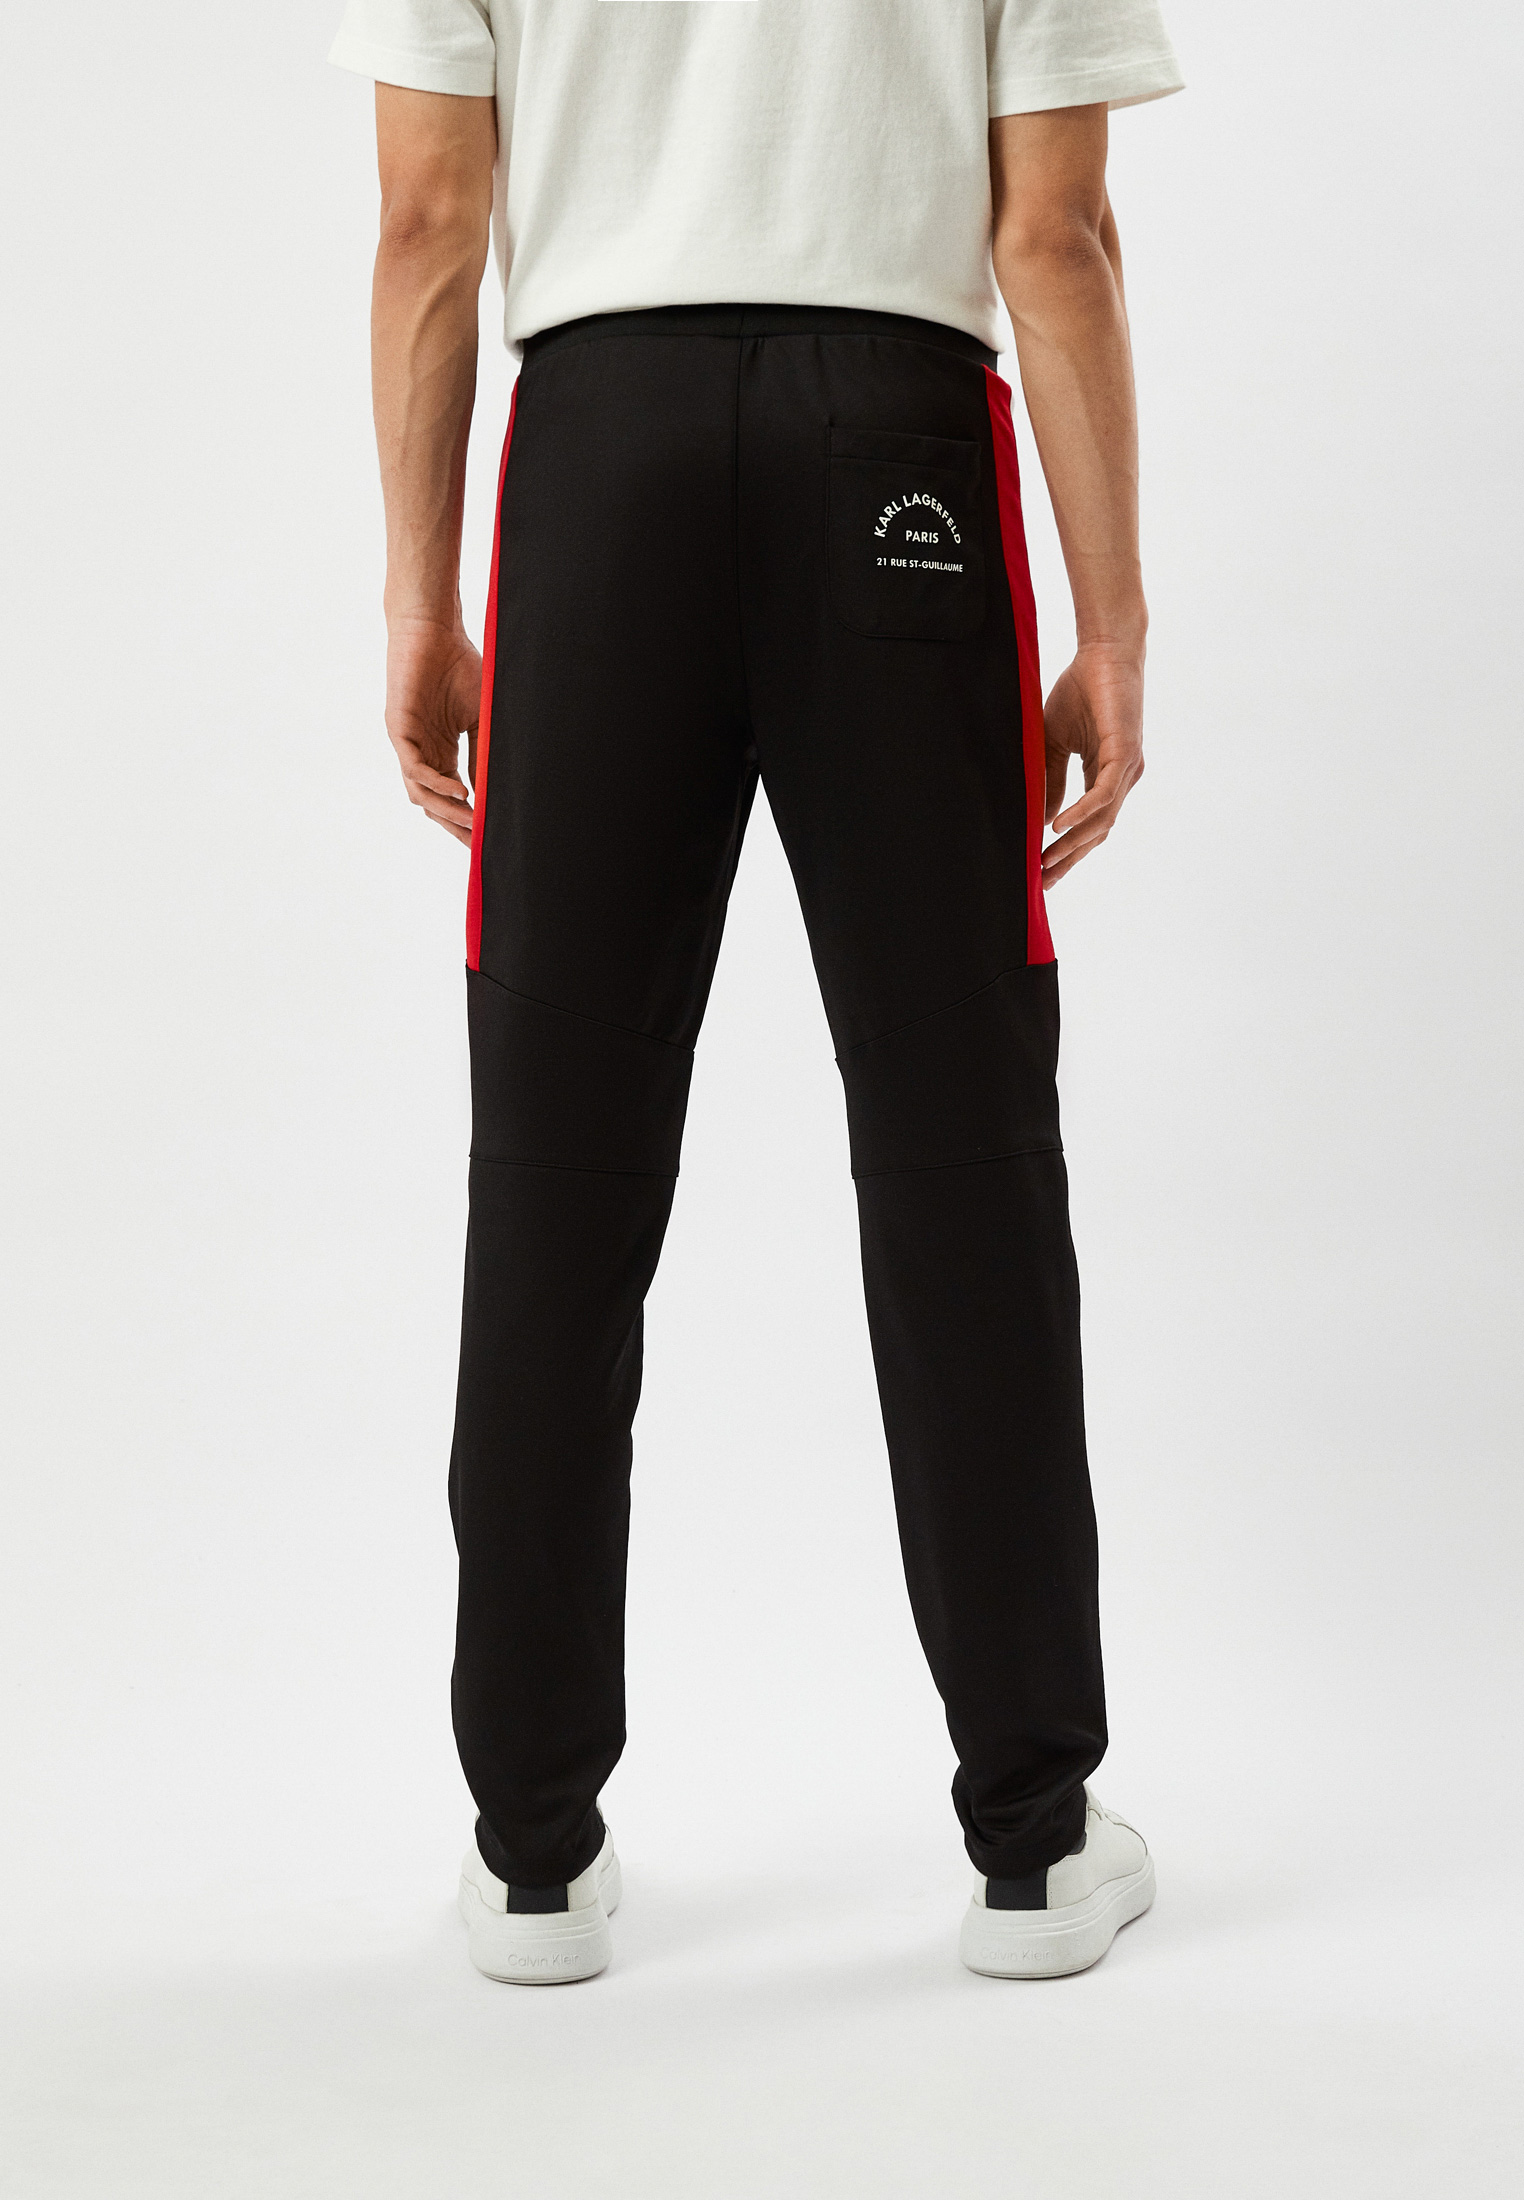 Мужские спортивные брюки Karl Lagerfeld (Карл Лагерфельд) 705431-532905: изображение 3